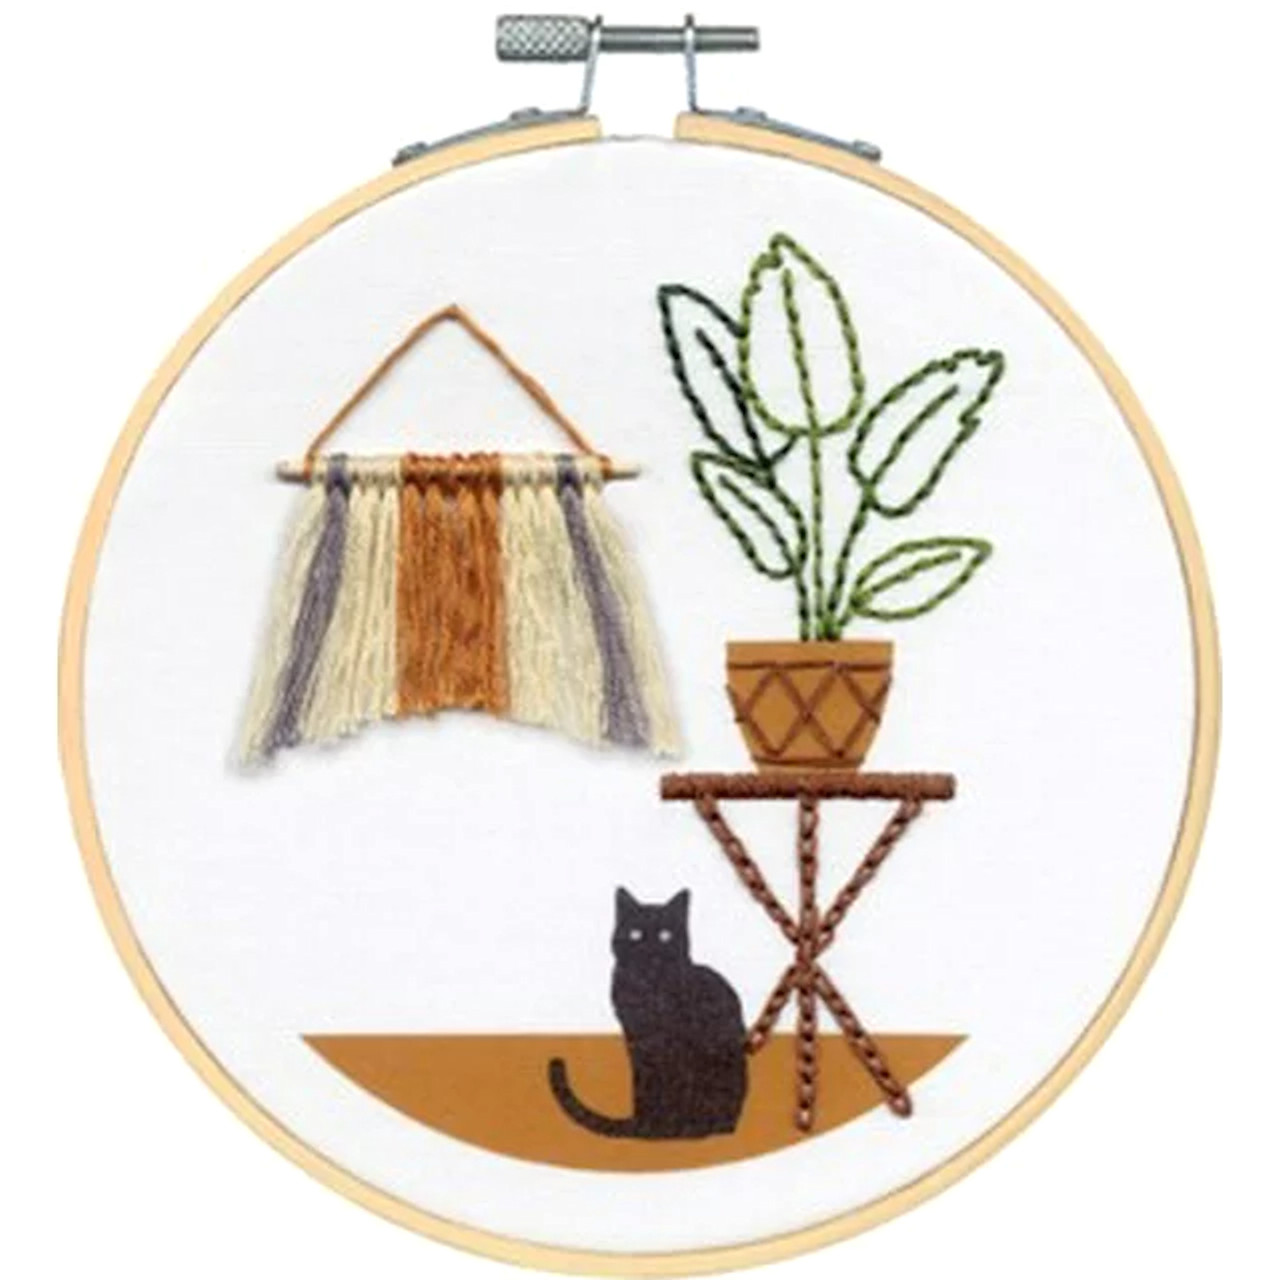 Cat Embroidery Kit for Beginner Beginner Embroidery Kit, Cross Stitch Pet  Embroidery Full Kit With Needlepoint Hoop DIY Craft Kit 